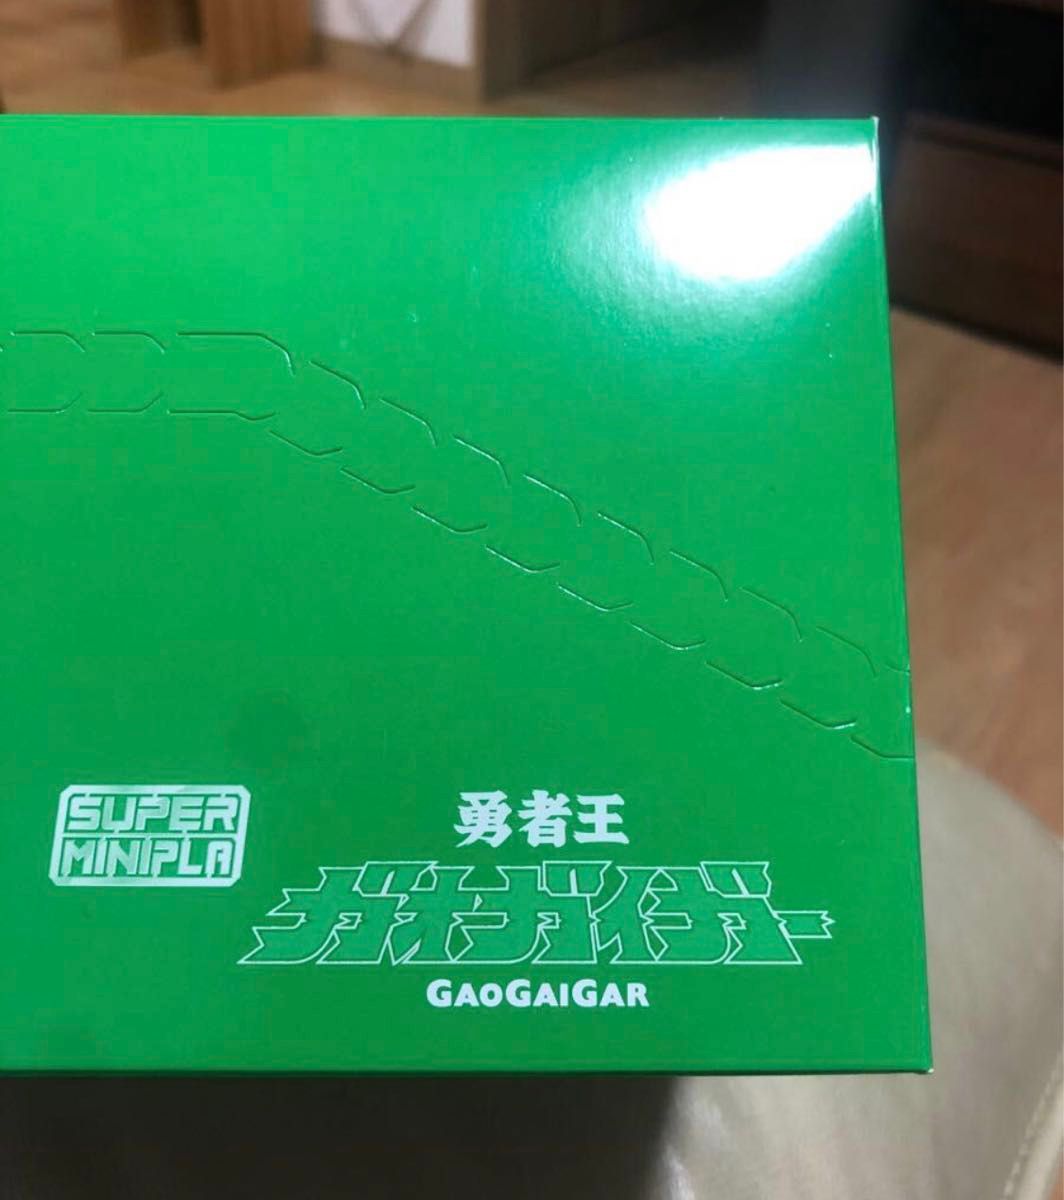 BANDAI  SUPER MINIPLA 勇者王 ガオガイガー GAIGAIGAR 4箱入り 新品未開封 即購入可能 送料込み